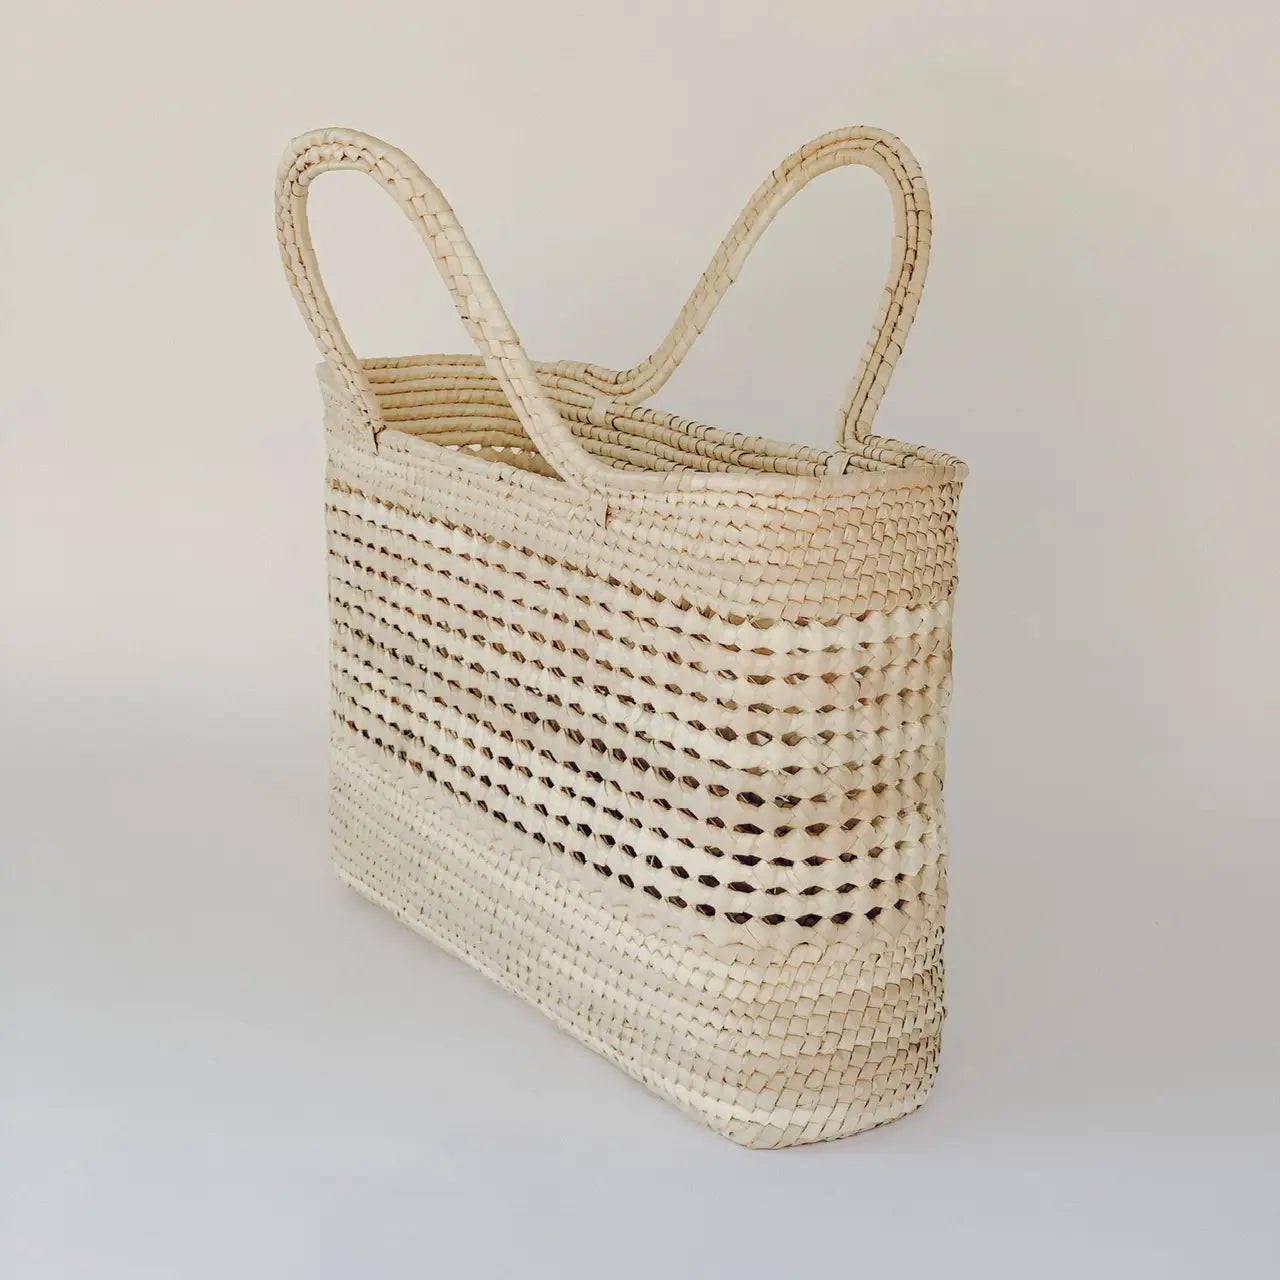 mercado straw basket by LEAH